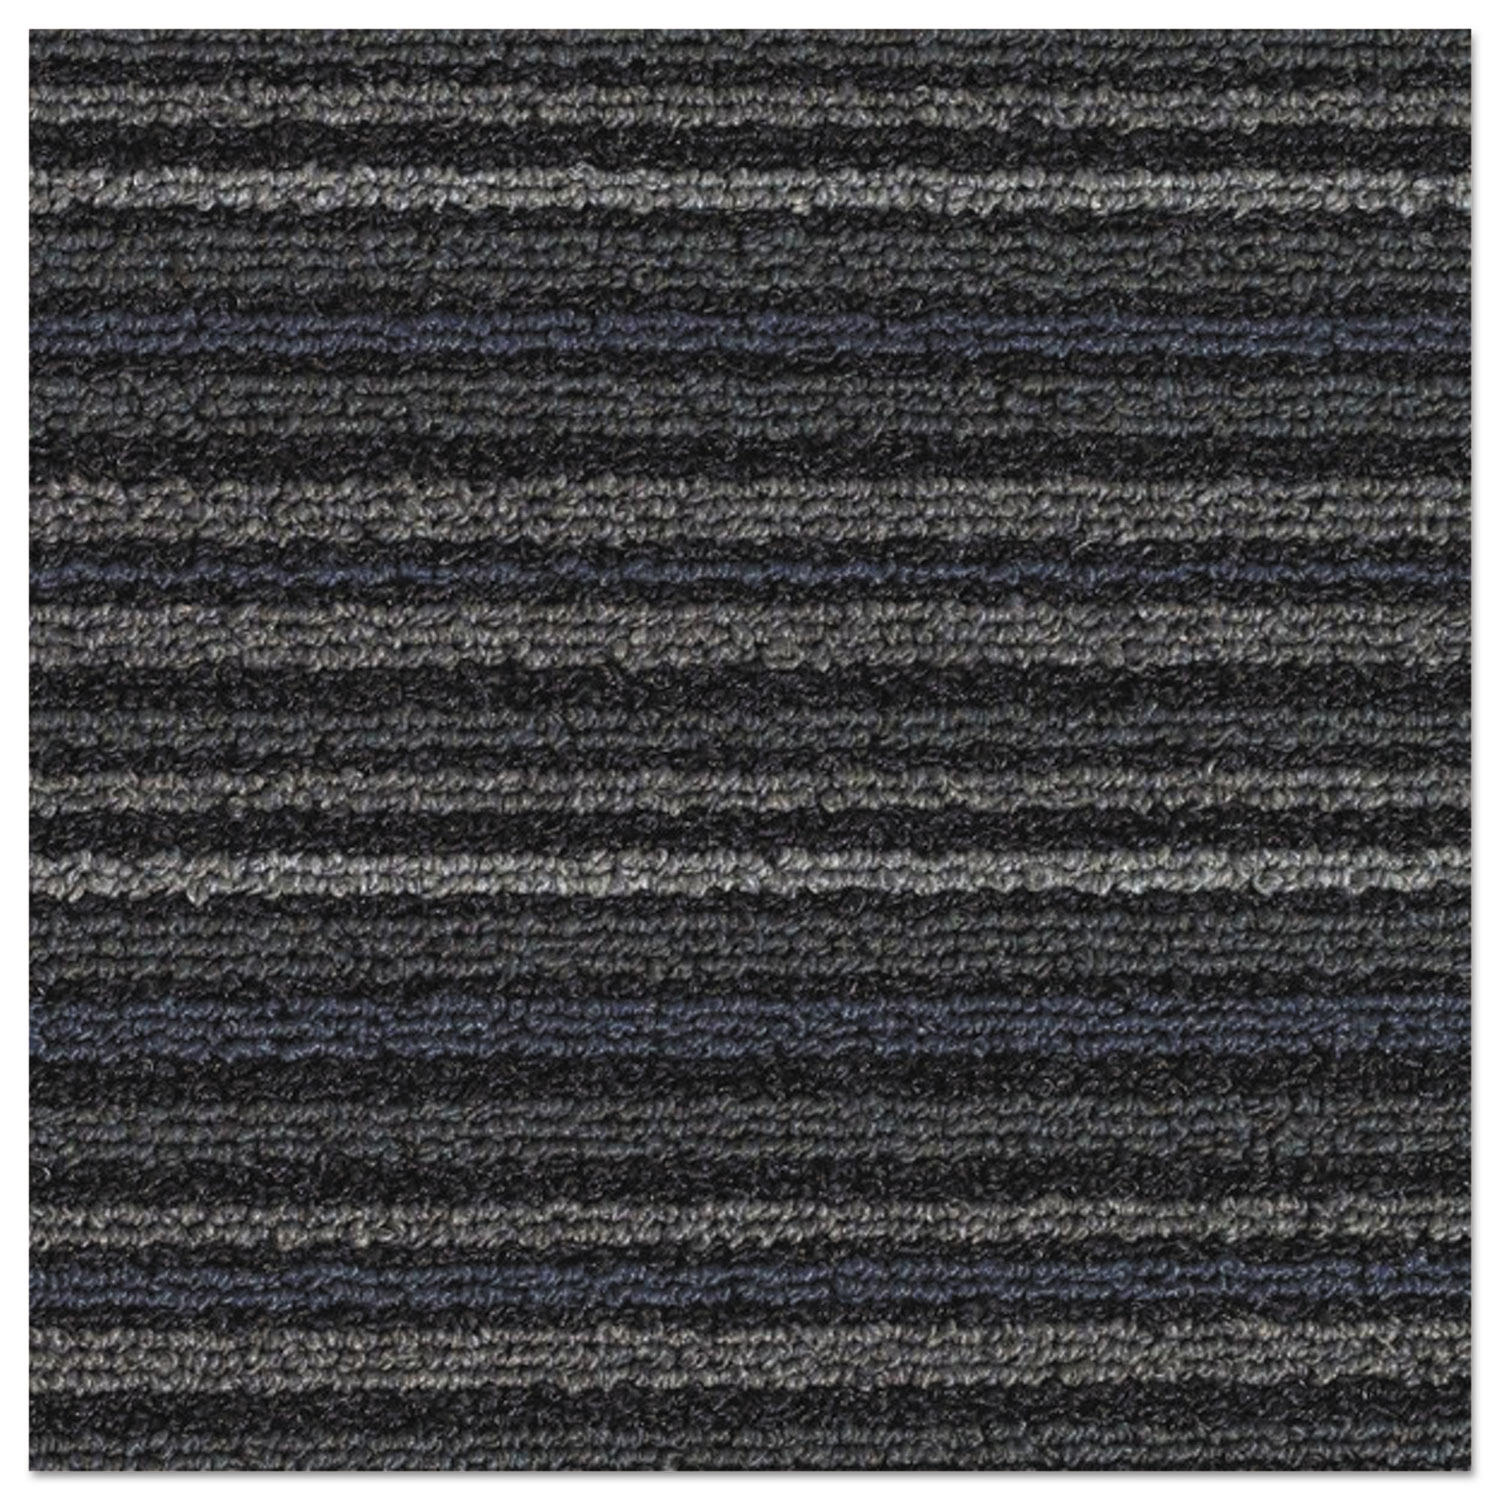 Nomad 7000 Heavy Traffic Carpet Matting, Nylon/Polypropylene, 36 x 60, Blue